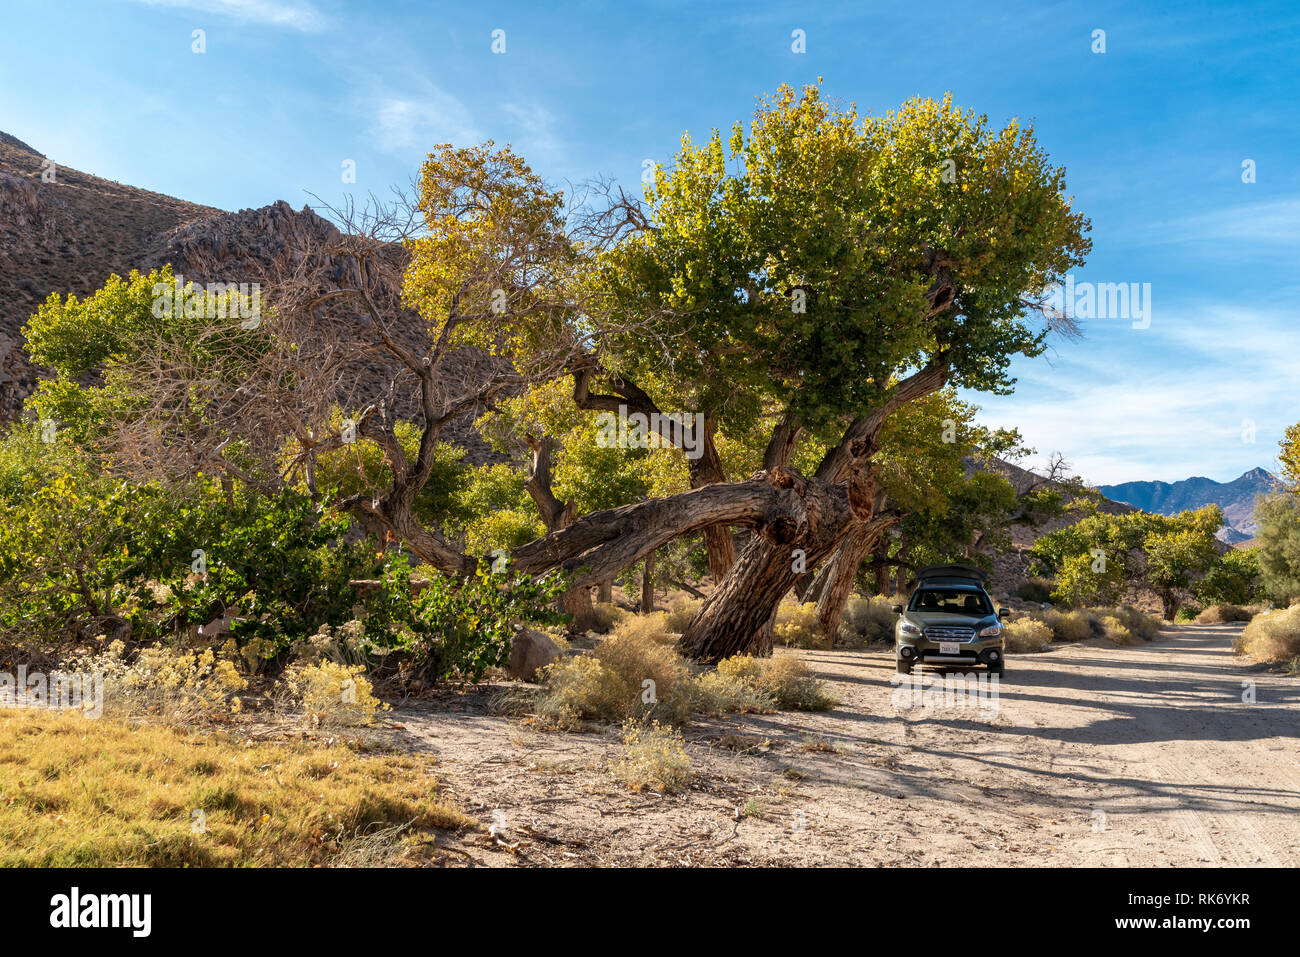 Macchina parcheggiata sotto gli alberi in caduta su un deserto di strada sterrata sotto il cielo blu. Alberi iniziano a mostrare i colori autunnali. Foto Stock